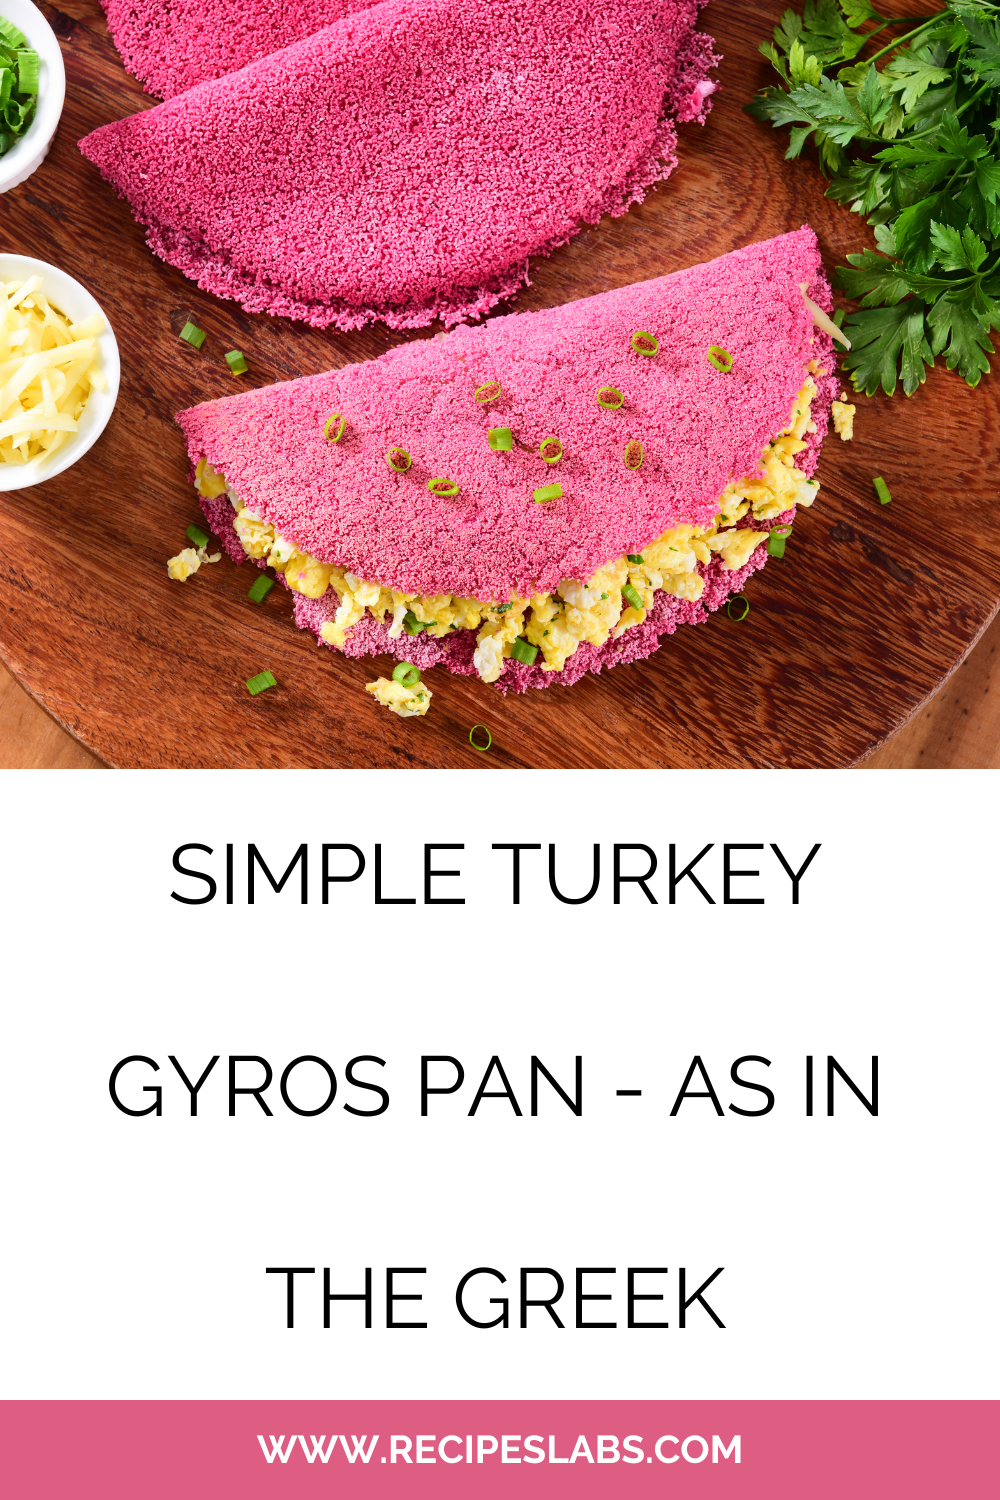 Simple Turkey Gyros Pan - As In The Greek